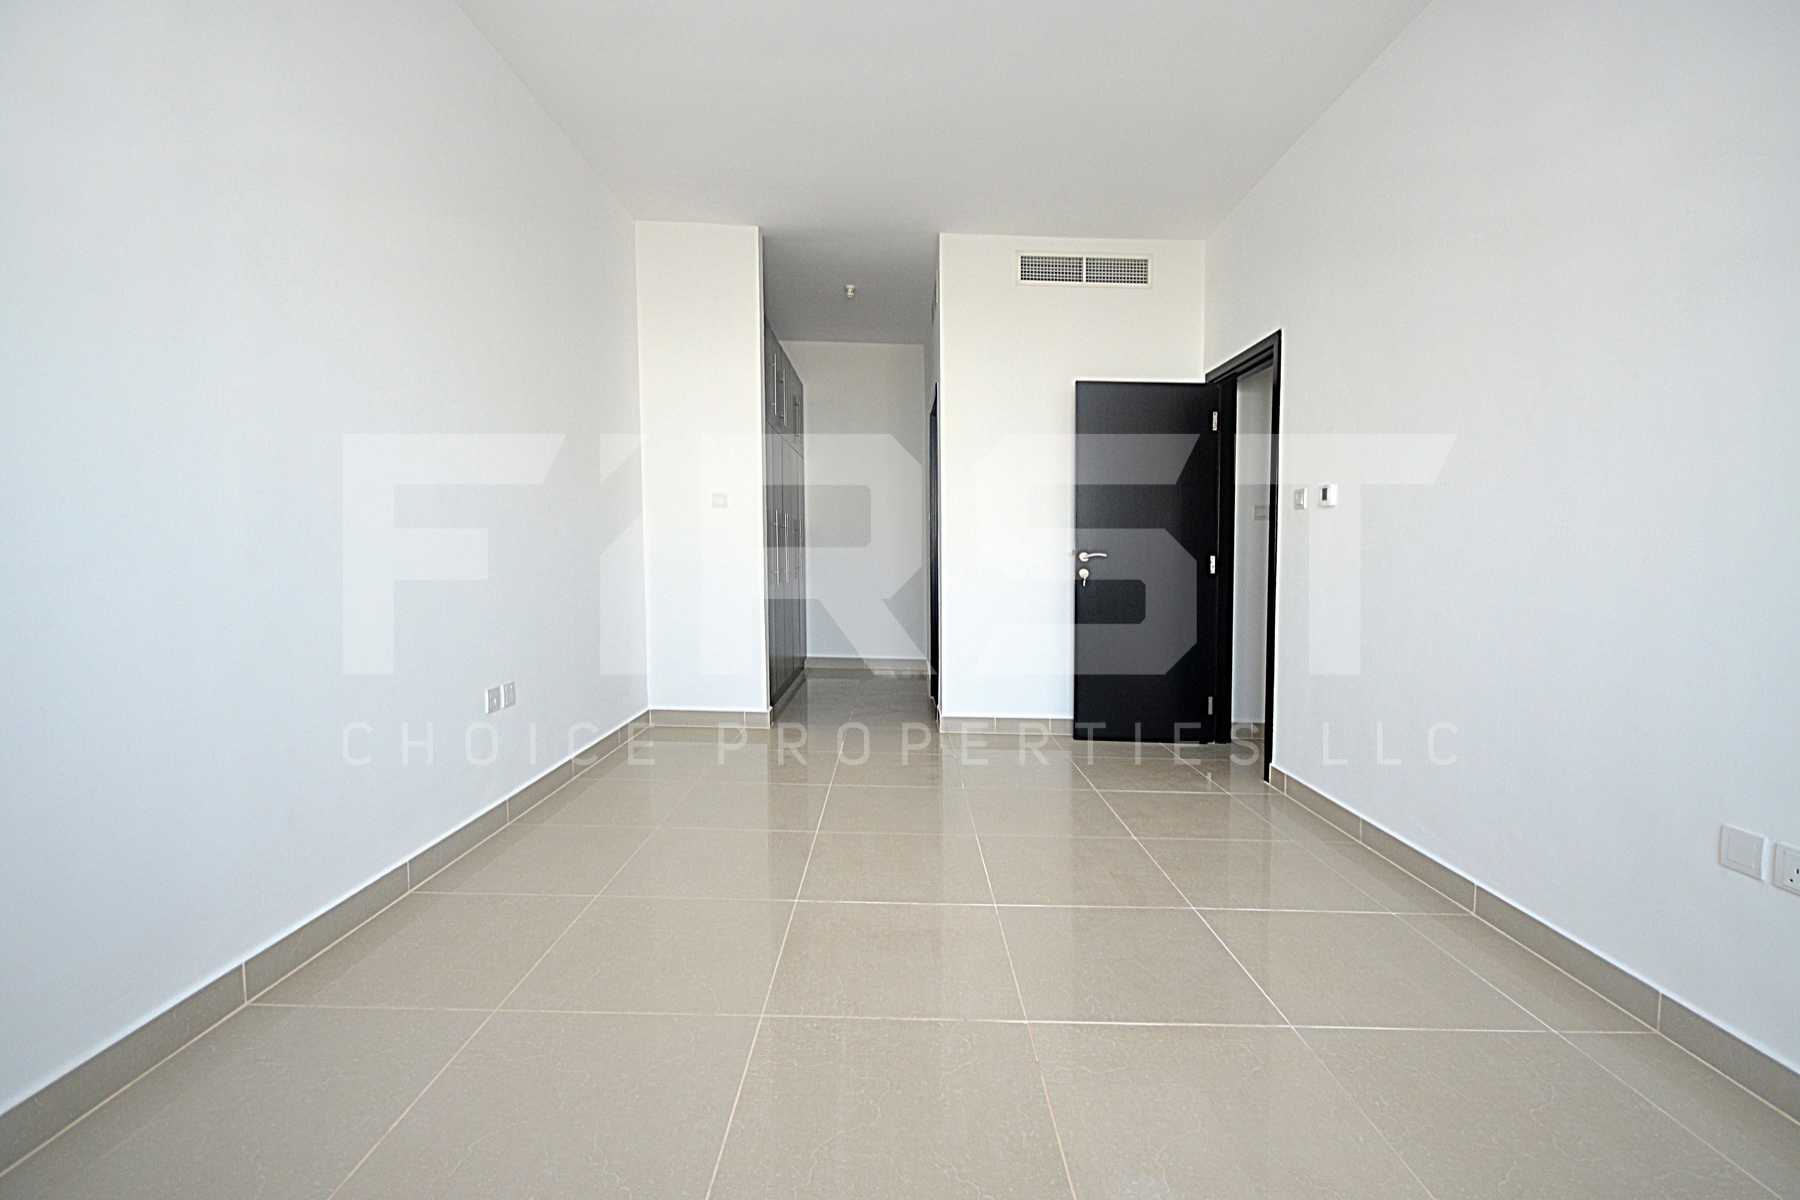 Internal Photo of 3 Bedroom Apartment Closed Kitchen in Al Reef Downtown Al Reef Abu Dhabi UAE (16).jpg